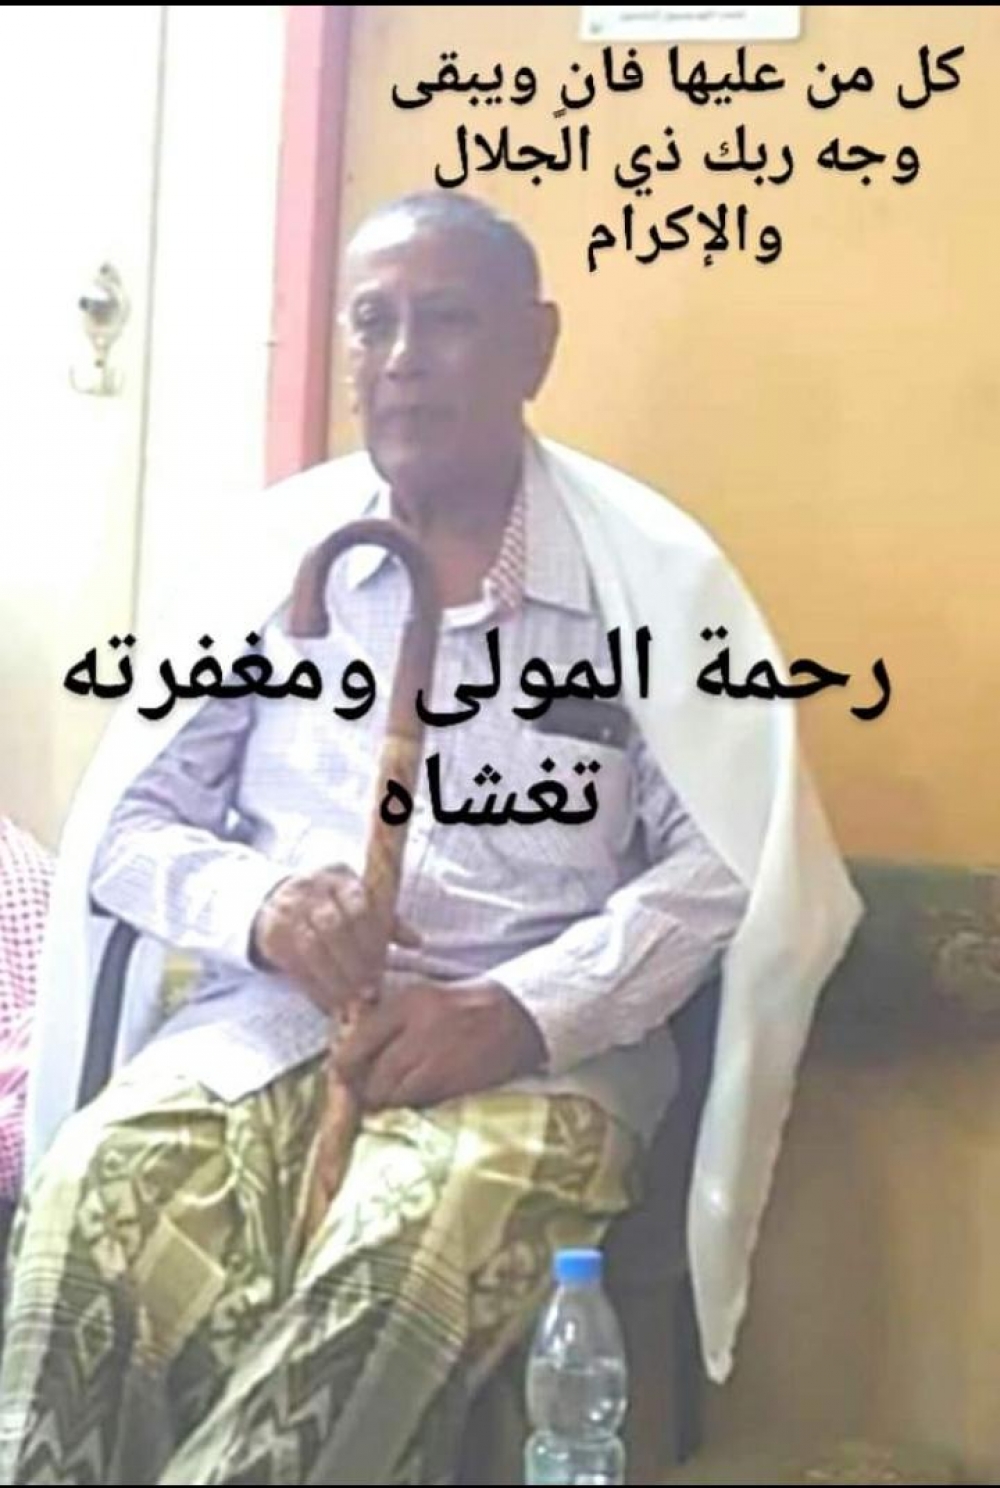 بالاسم والصوره وفاة وزير يمني وشخصية جنوبية بارزة